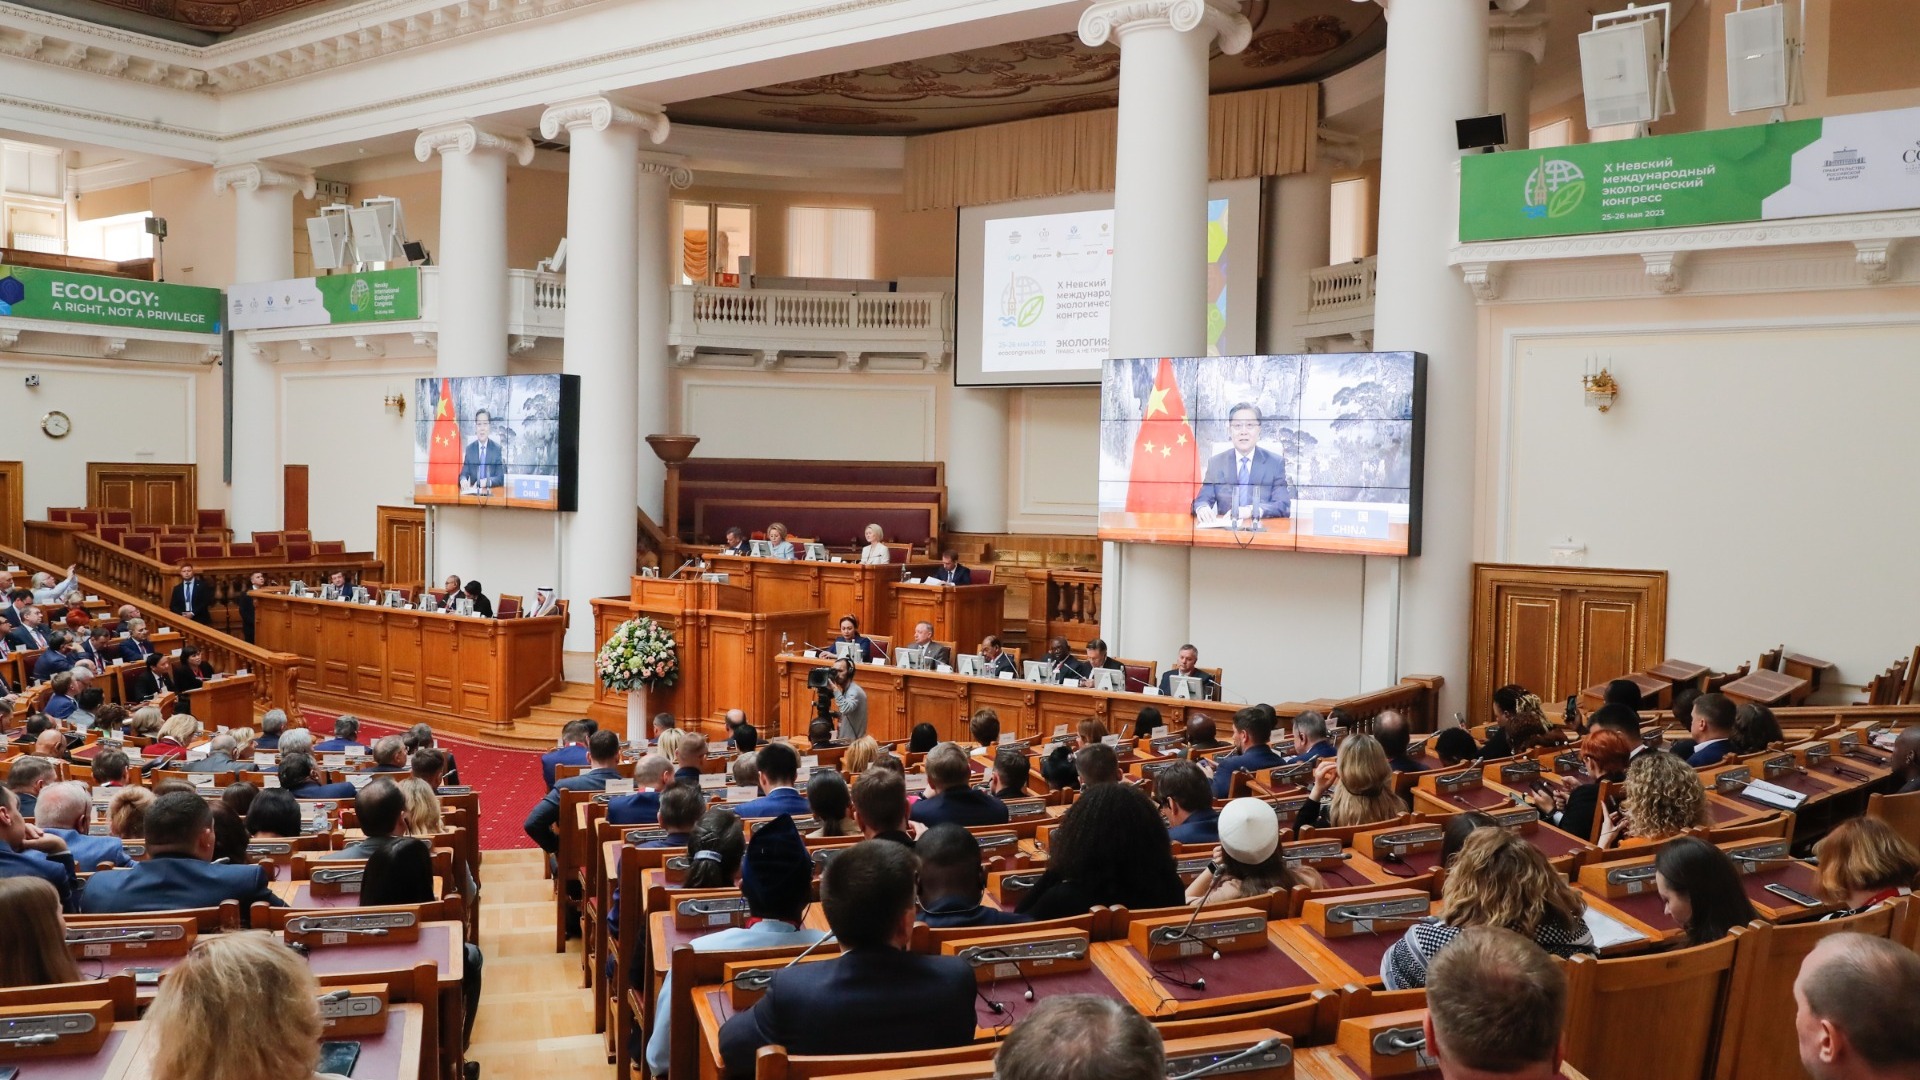 Подведены итоги Десятого Невского международного экологического конгресса